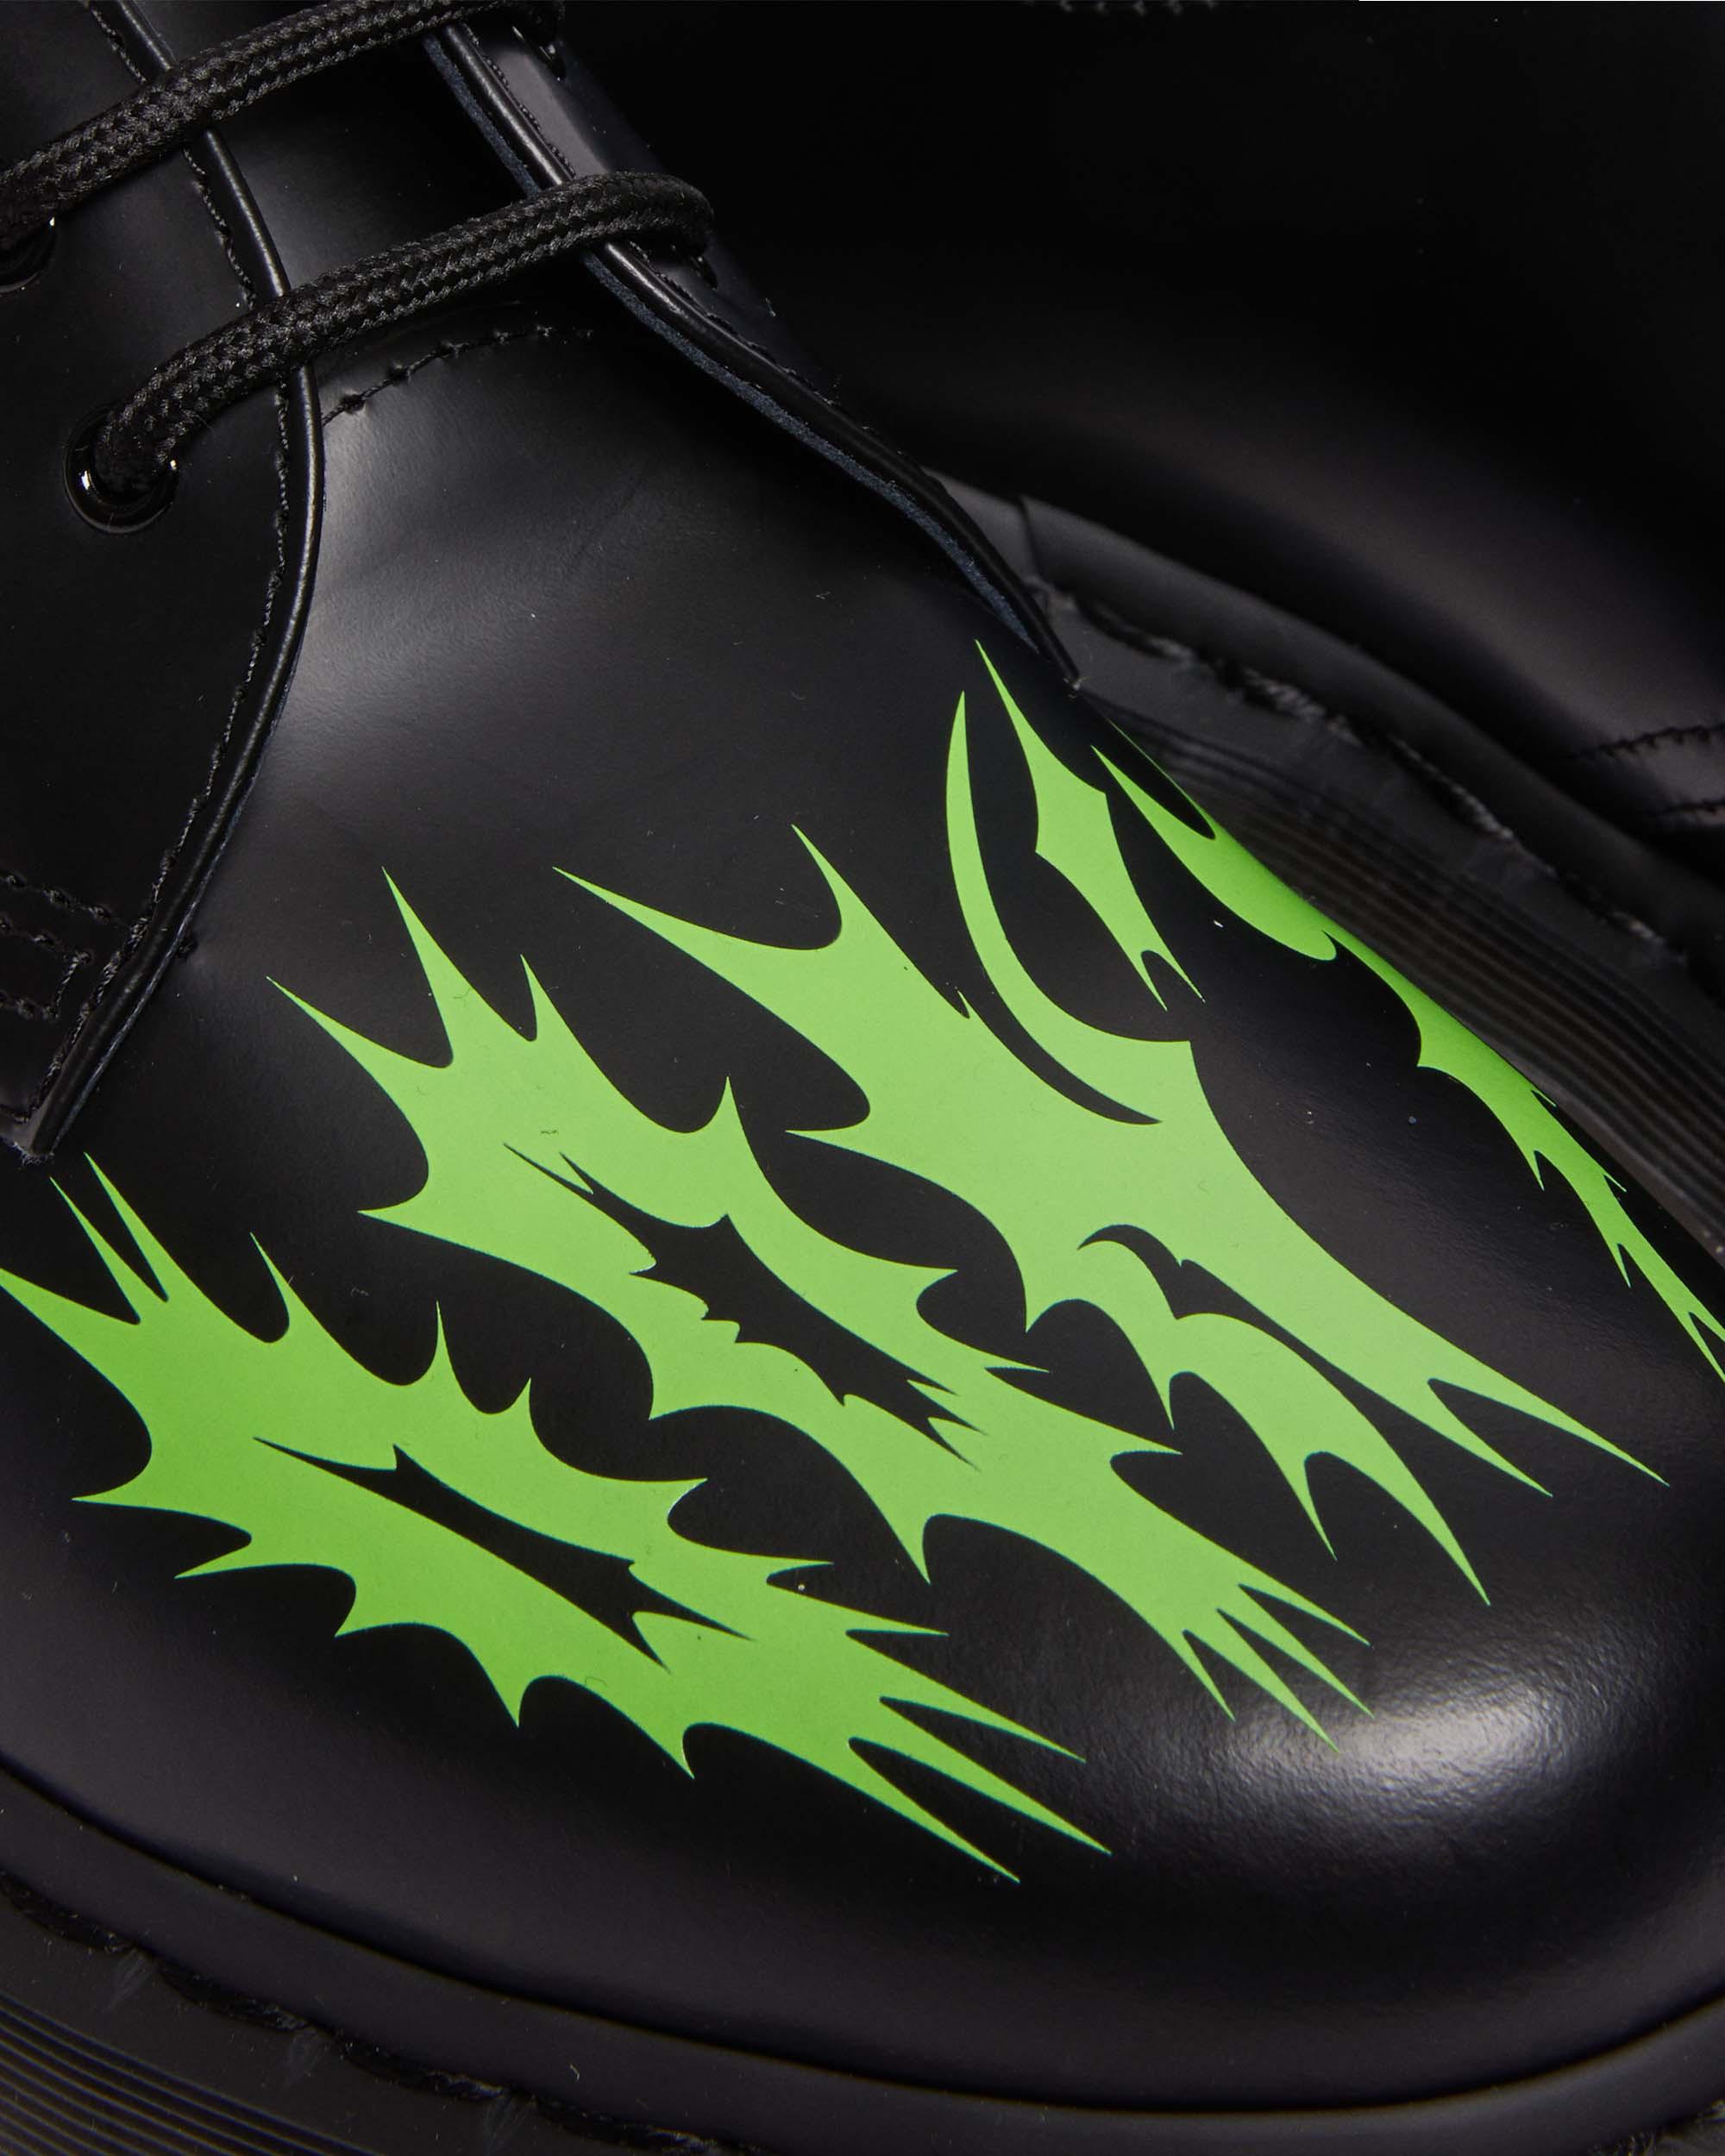 Zapatos 1460 NTS de piel in Negro+Verde